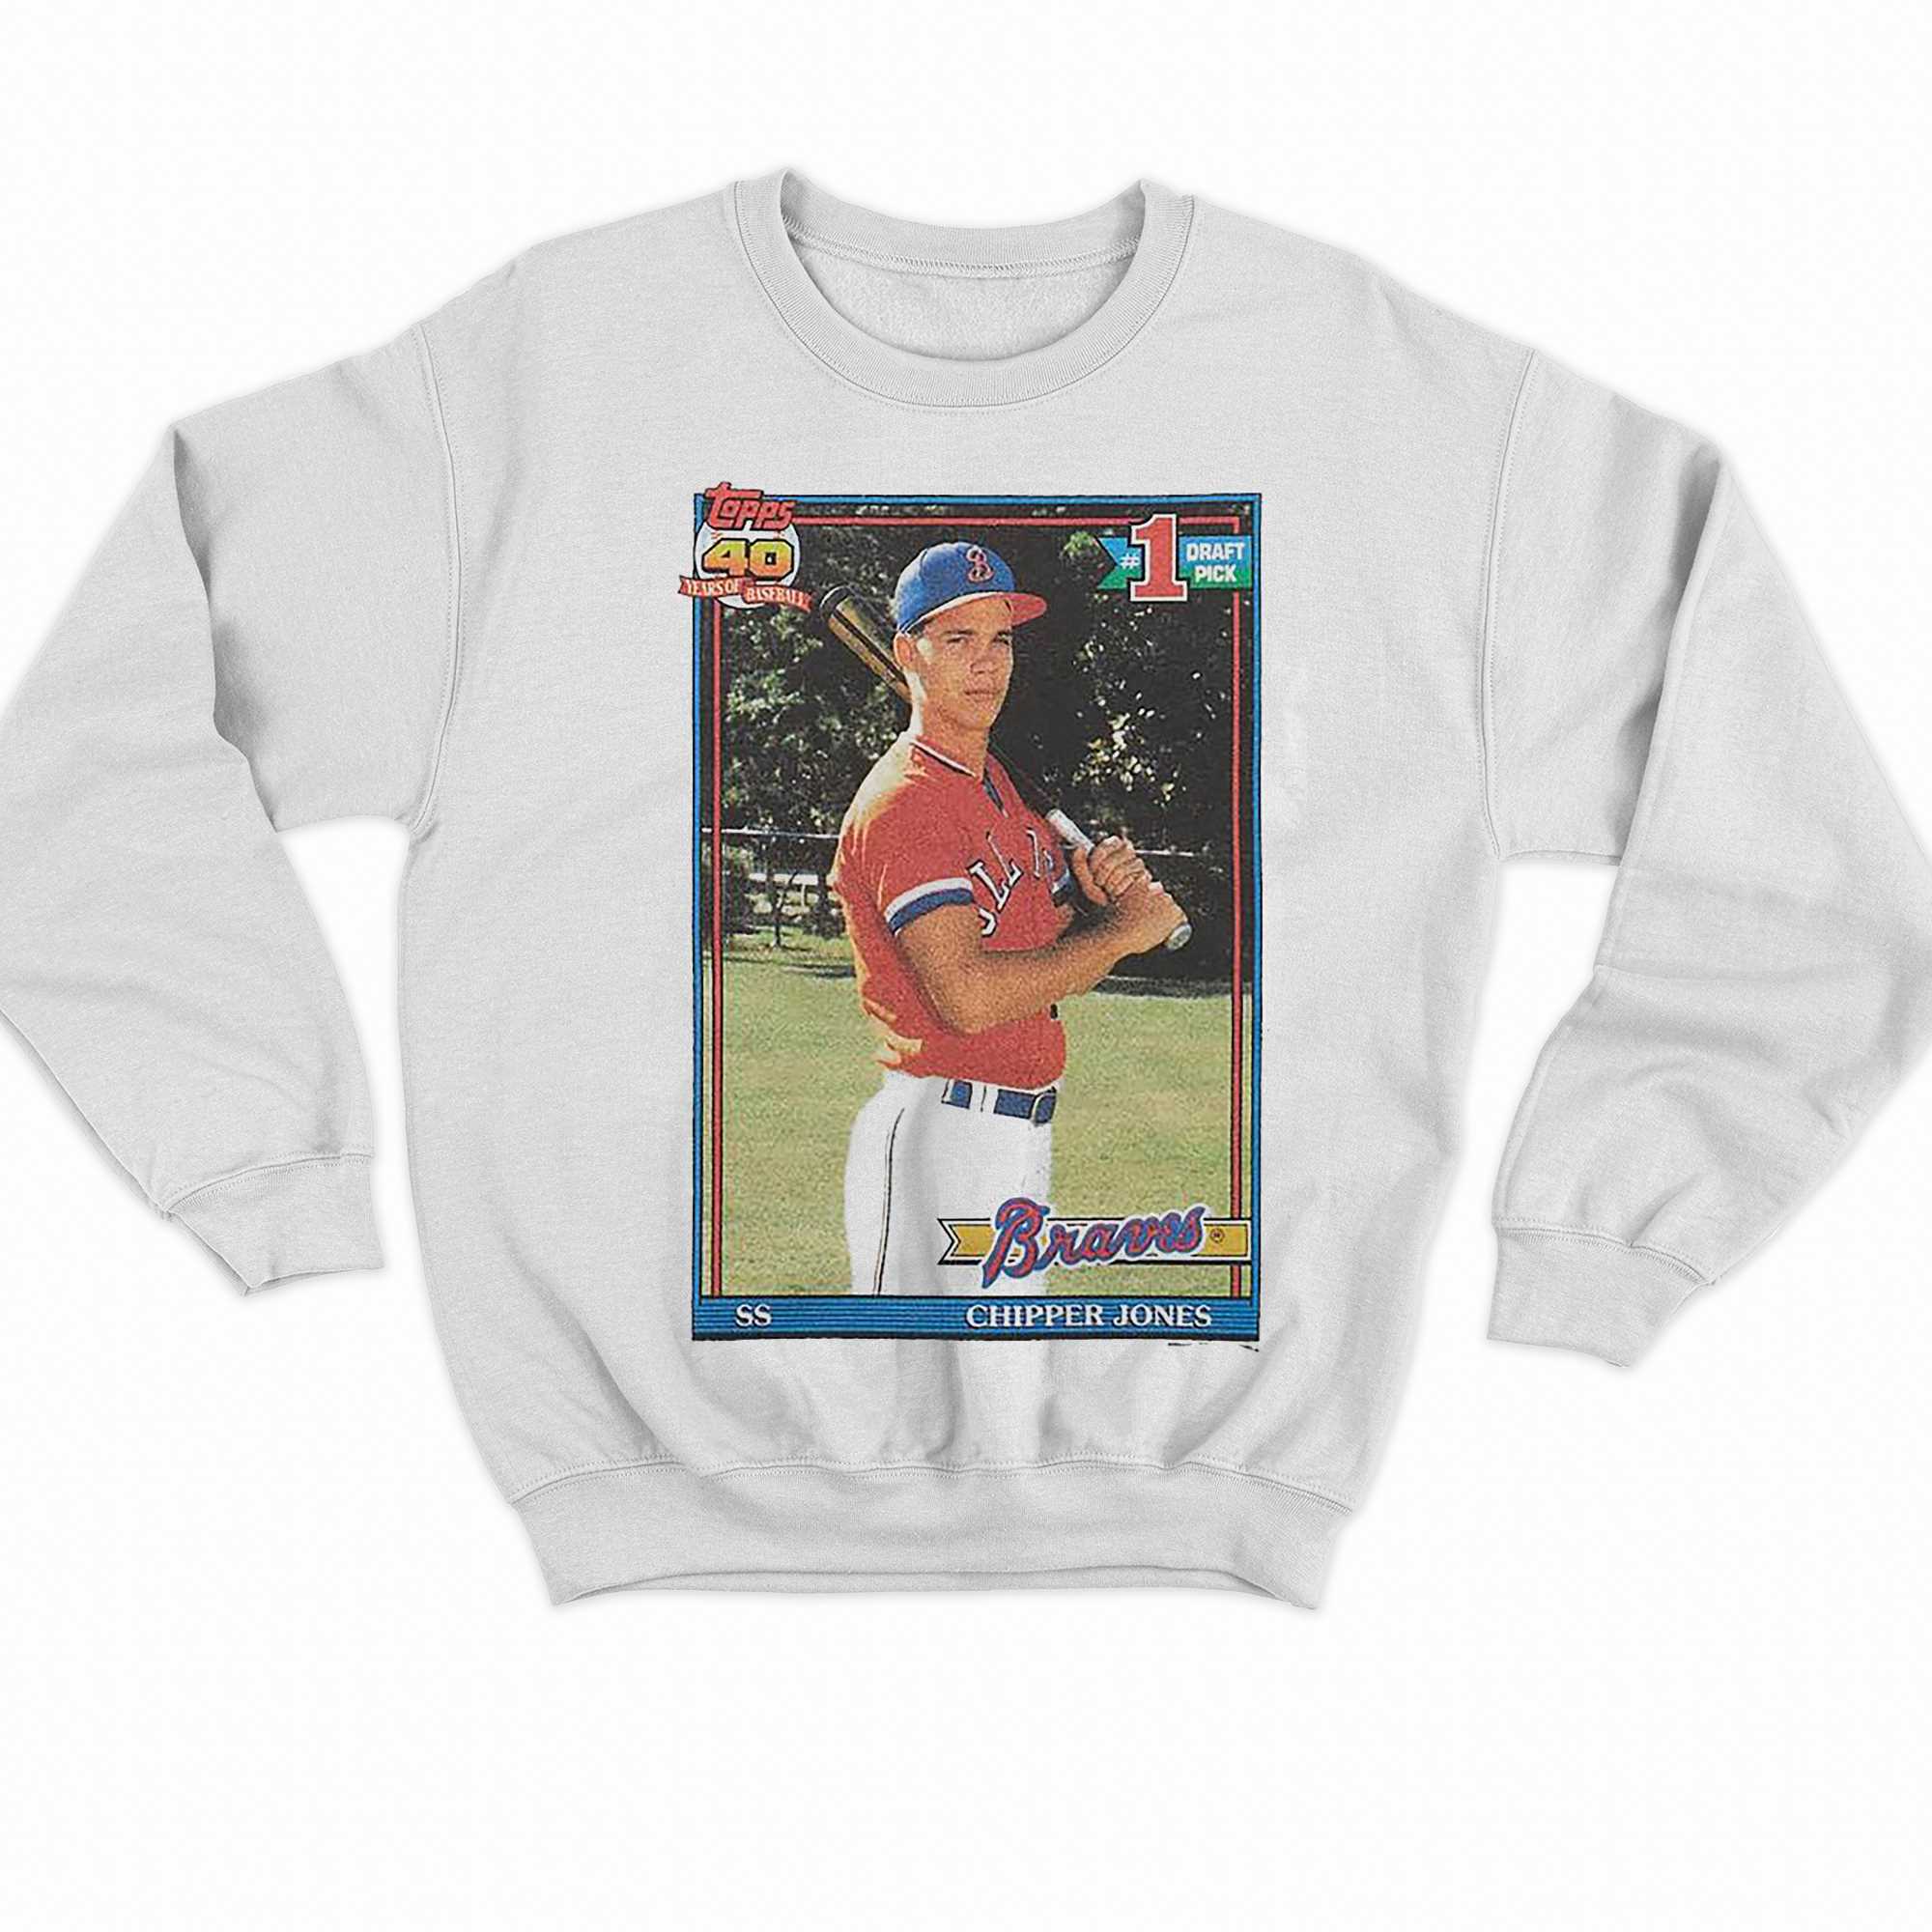 1991 Topps Baseball Chipper Jones Braves Shirt 